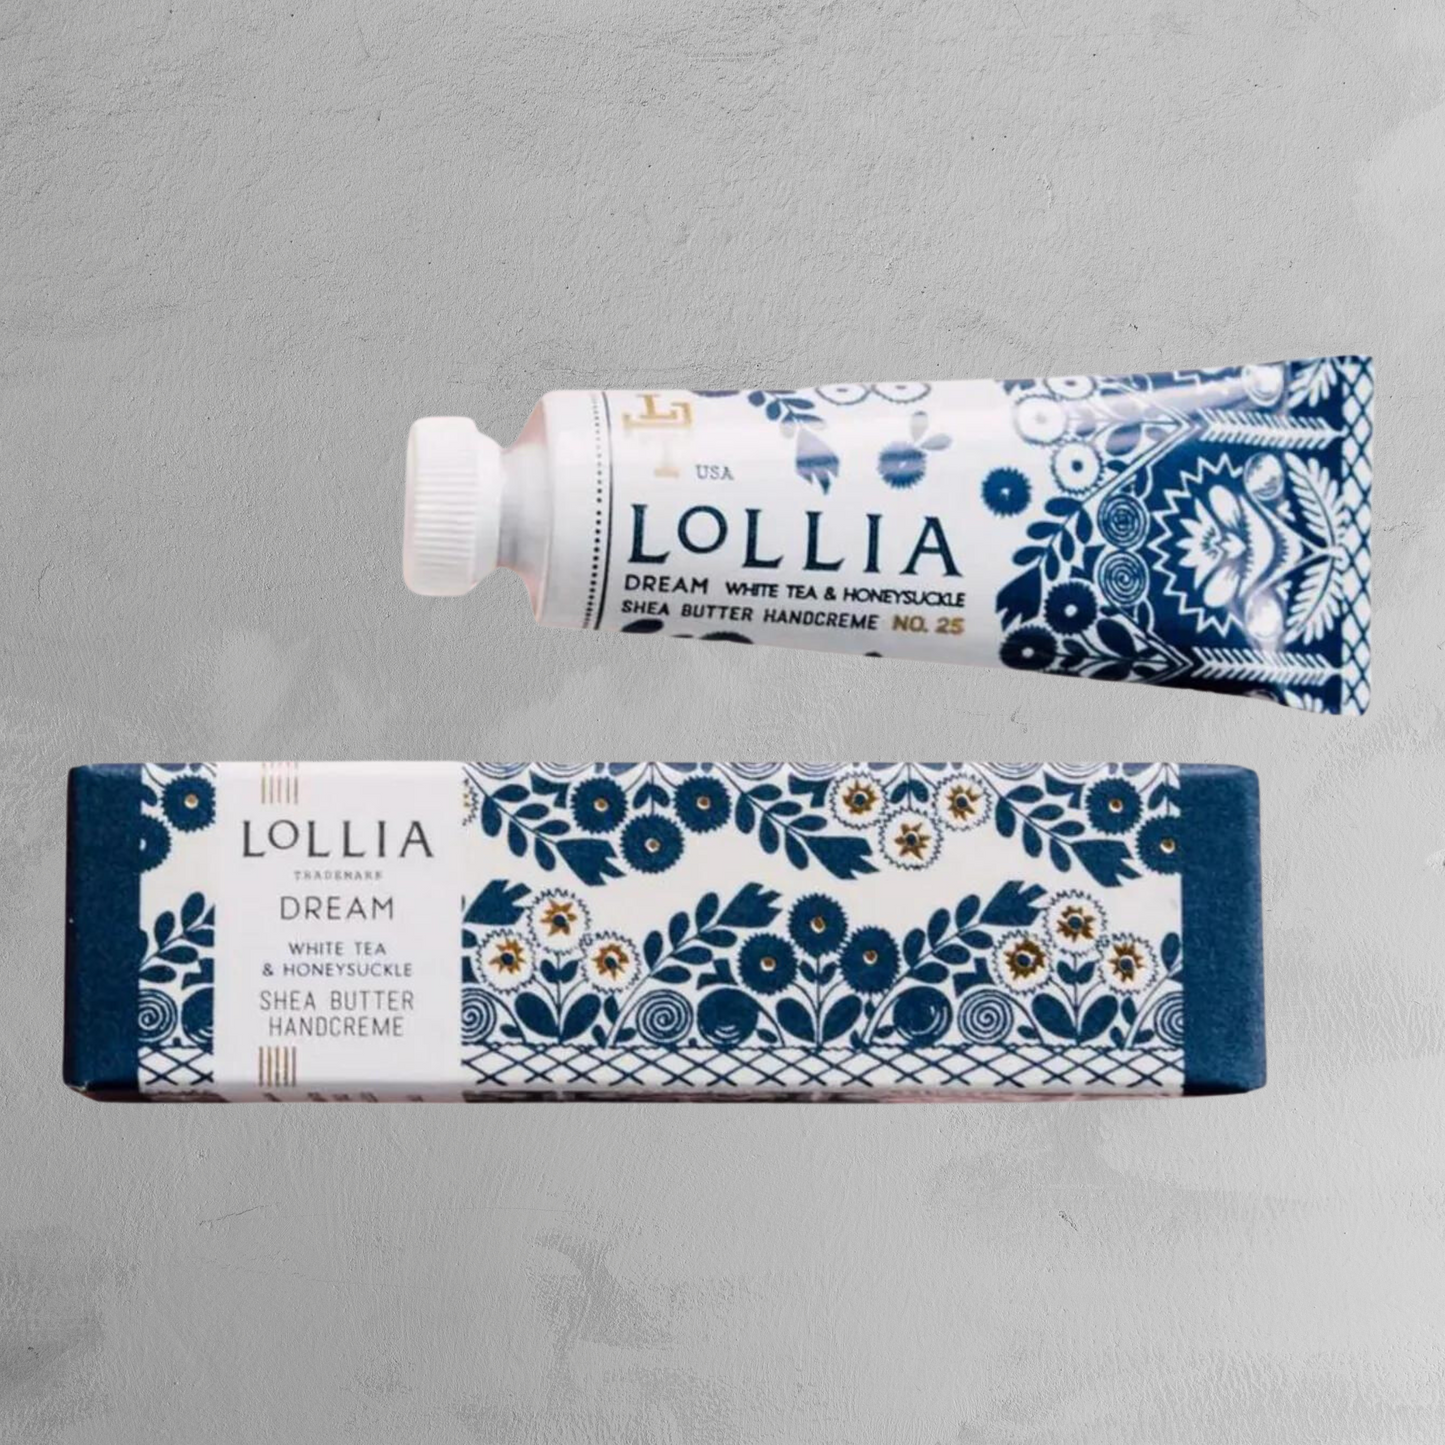 Lollia - Petite Handcreme - Dream